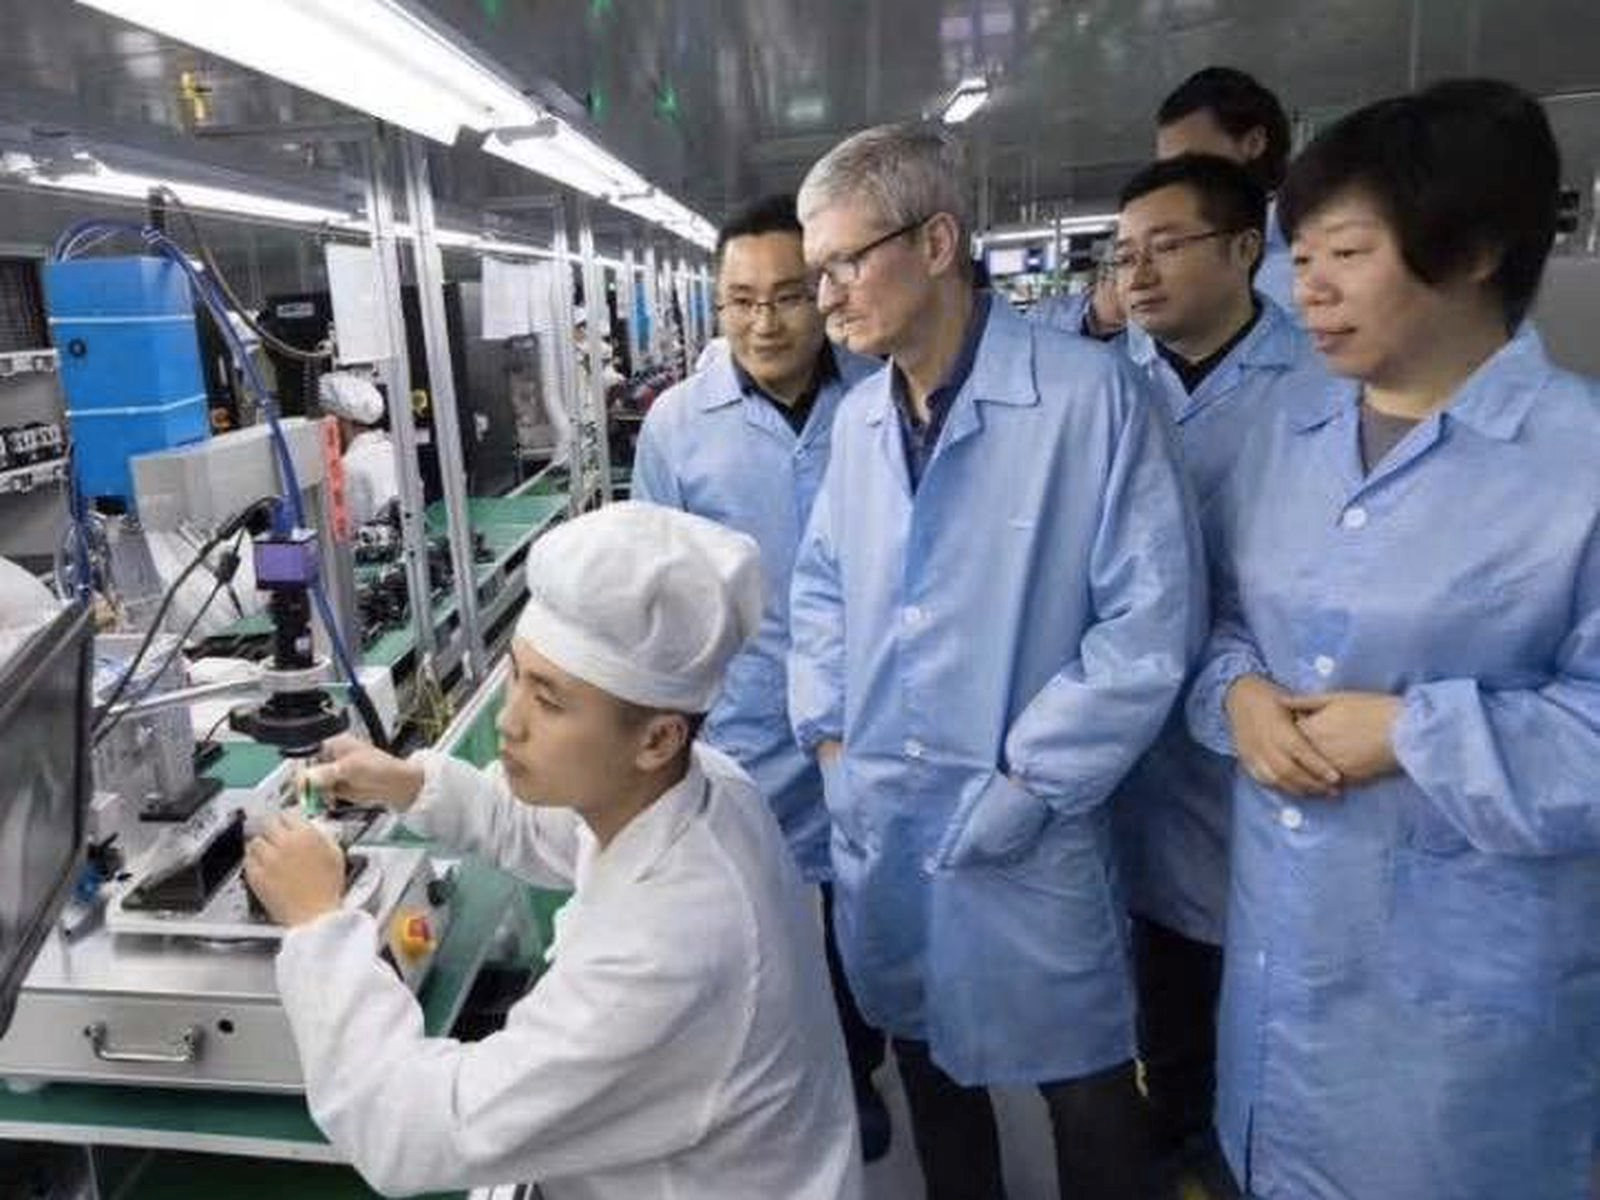 Chớp lấy thời cơ để đi lên, xuất khẩu iPhone dự kiến thu về gần 60 ngàn tỷ đồng cho Ấn Độ - Việt Nam cạnh tranh ra sao? - Ảnh 2.